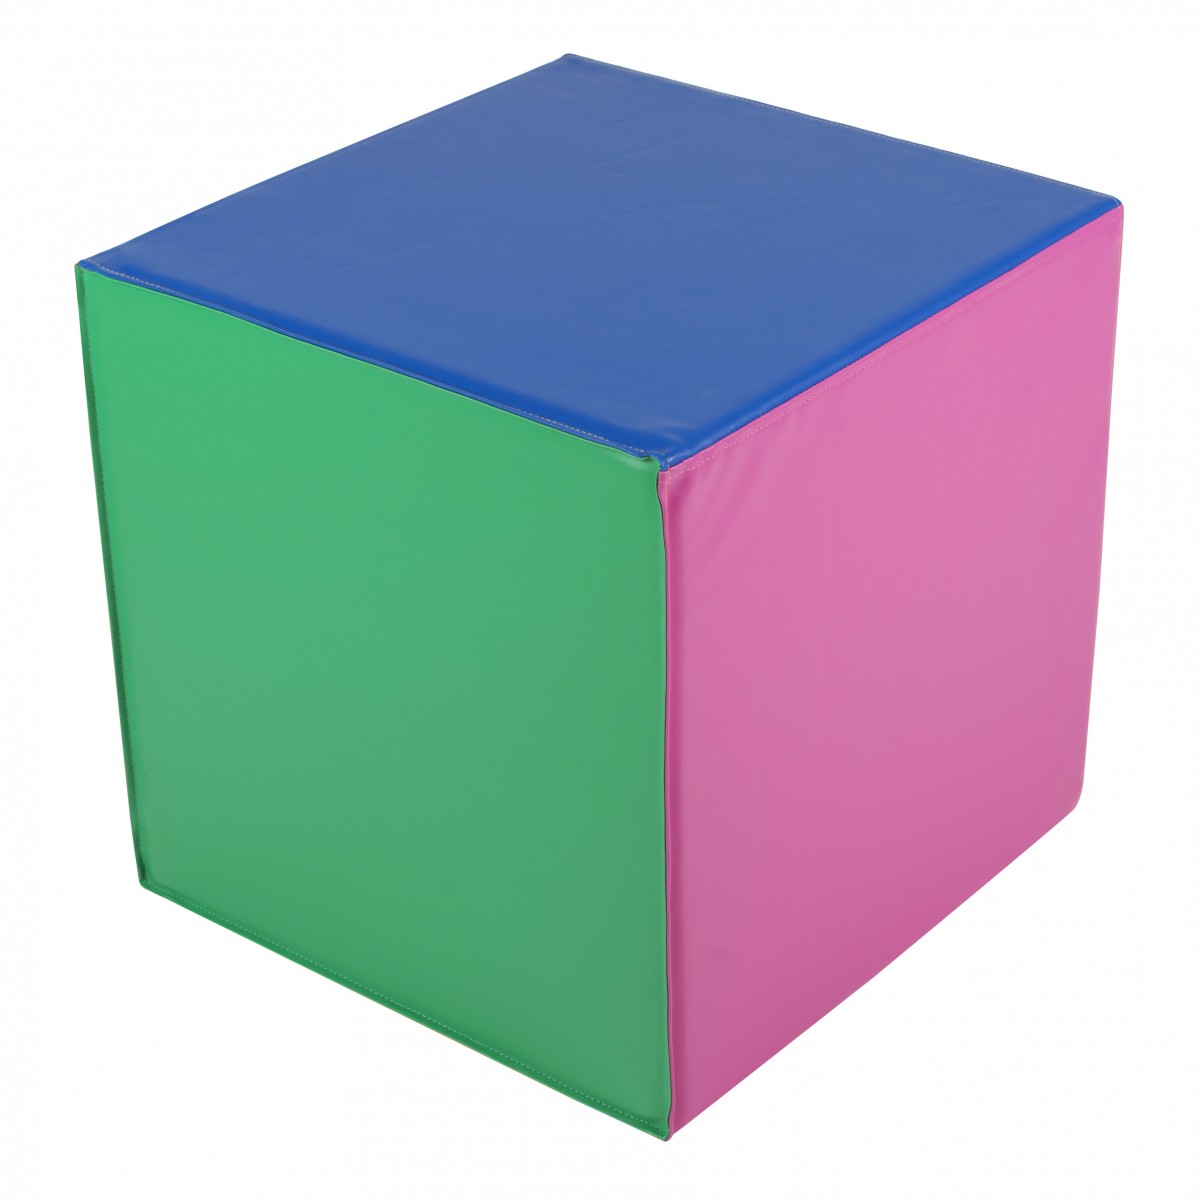 Cube en mousse de poull-ball - 2 - Cube de Poull-ball en mousse, cube beaucoup plus résistant que le cube gonflable.
Dimensions